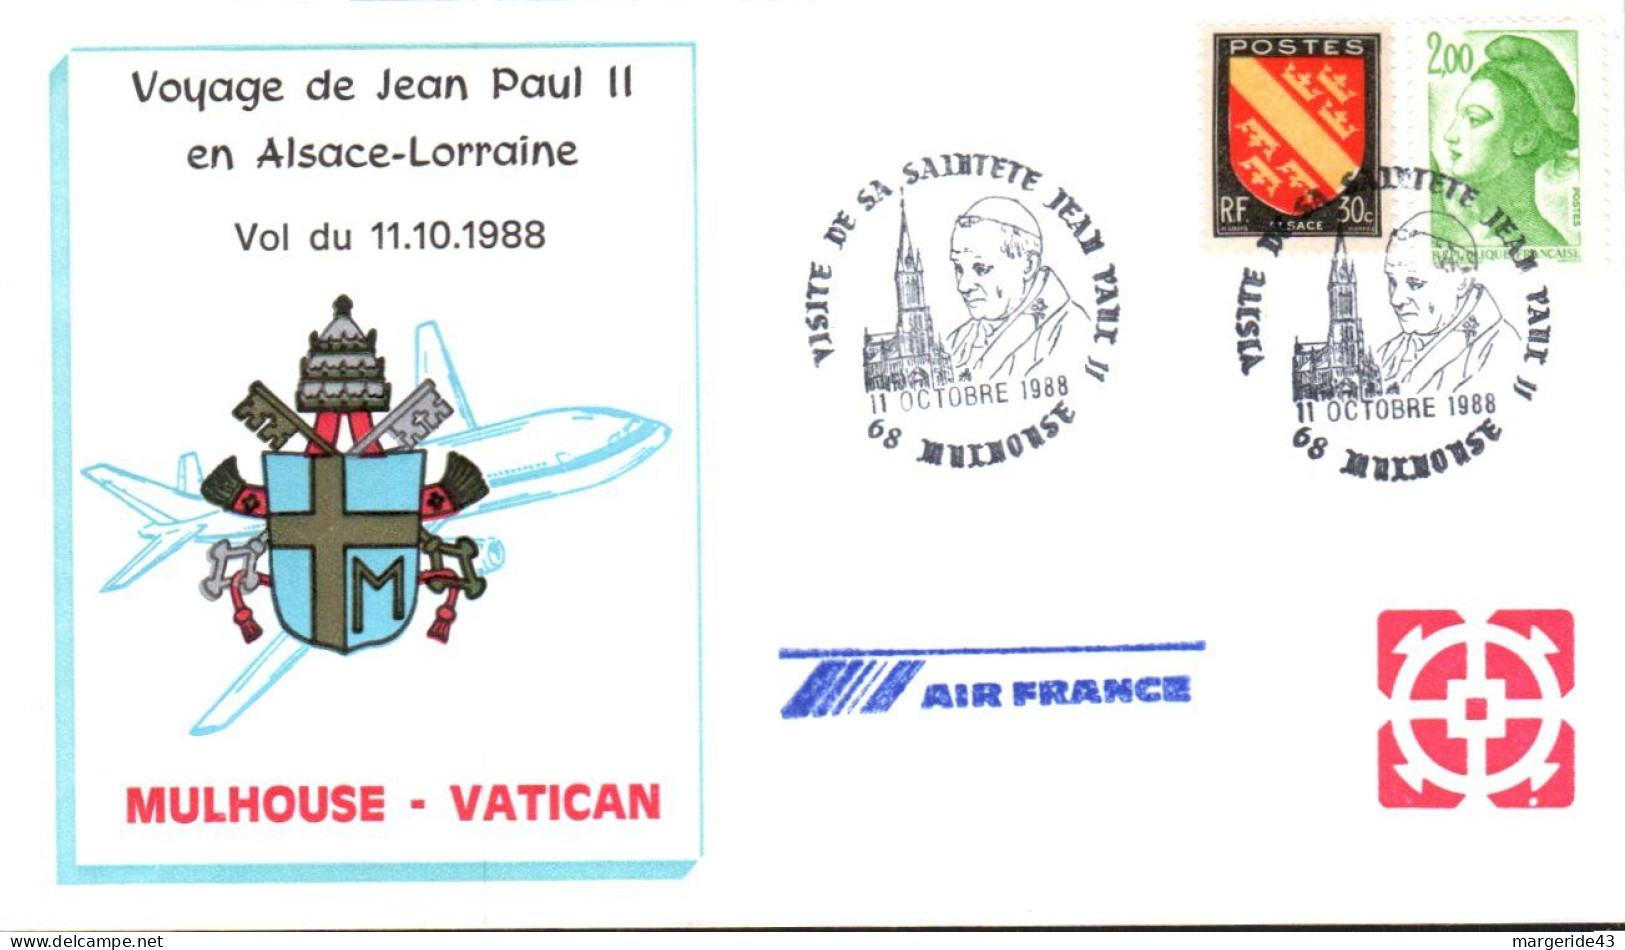 VOYAGE PAPE JEAN PAUL II EN ALSACE LORRAINE MULHOUSE VATICAN PAR AIR FRANCE 1988 - Popes